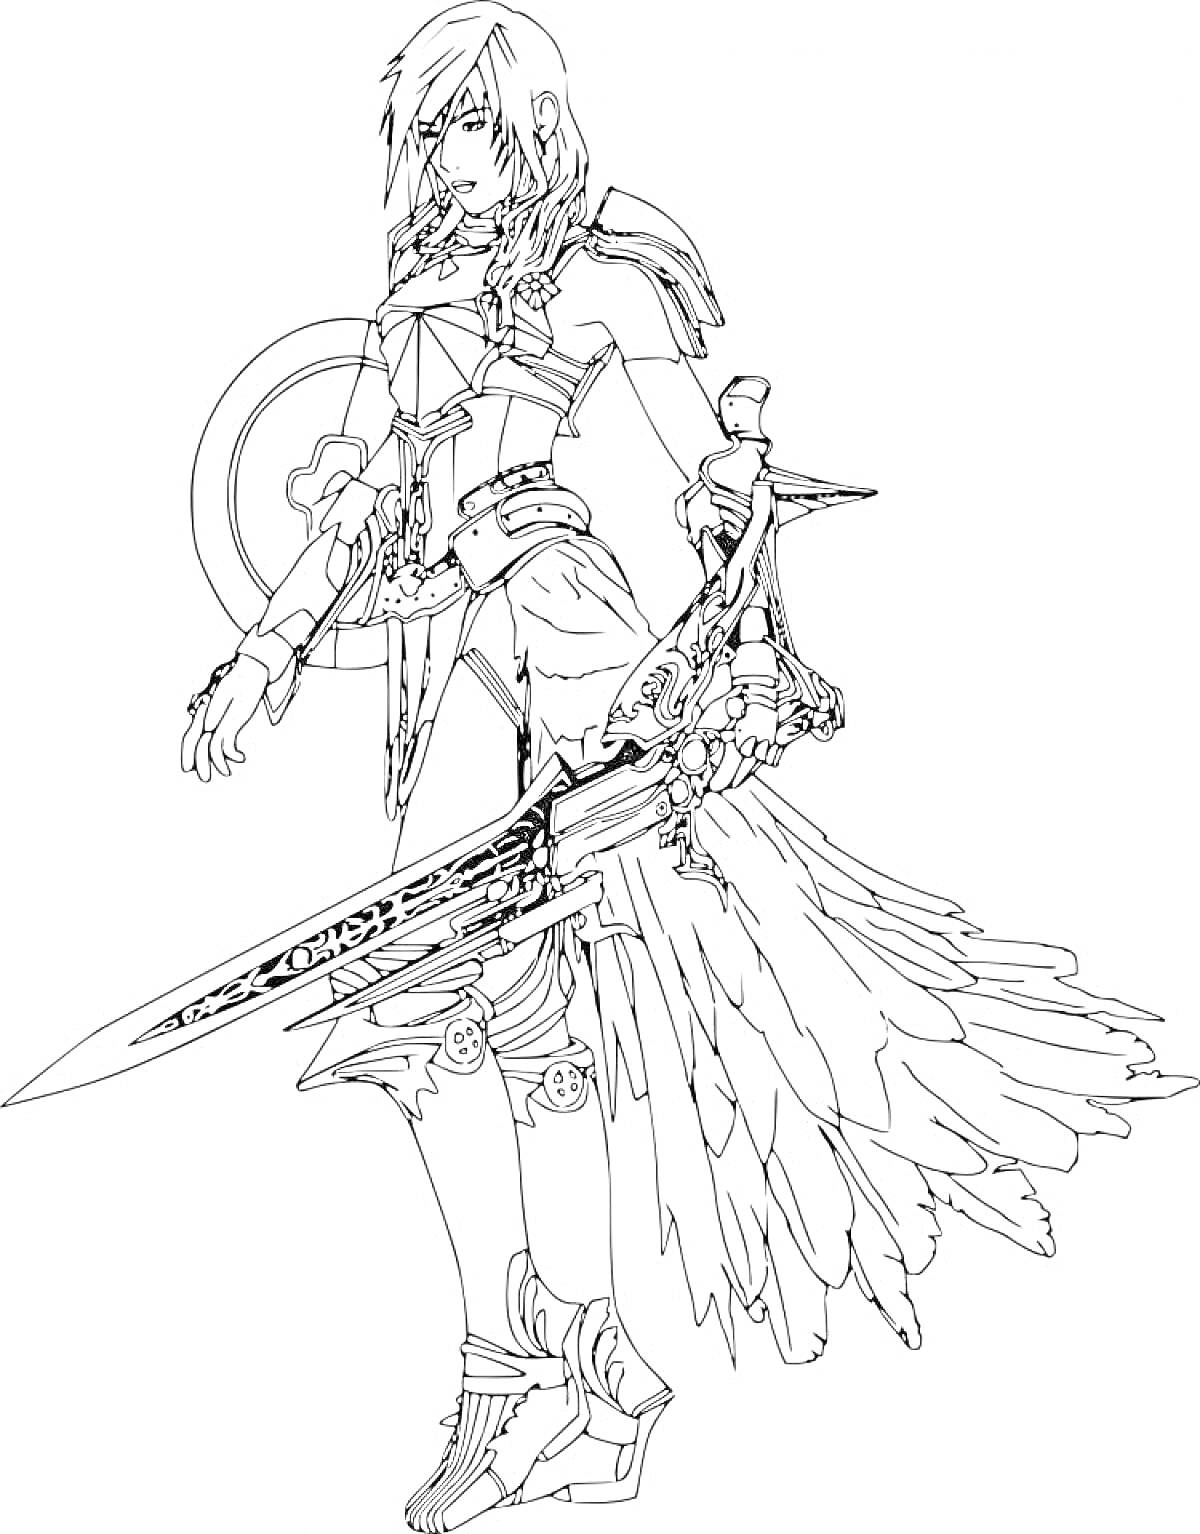 Персонаж Gacha Life с длинными волосами, в боевом костюме с доспехами, щитом, мечами и перьями на юбке